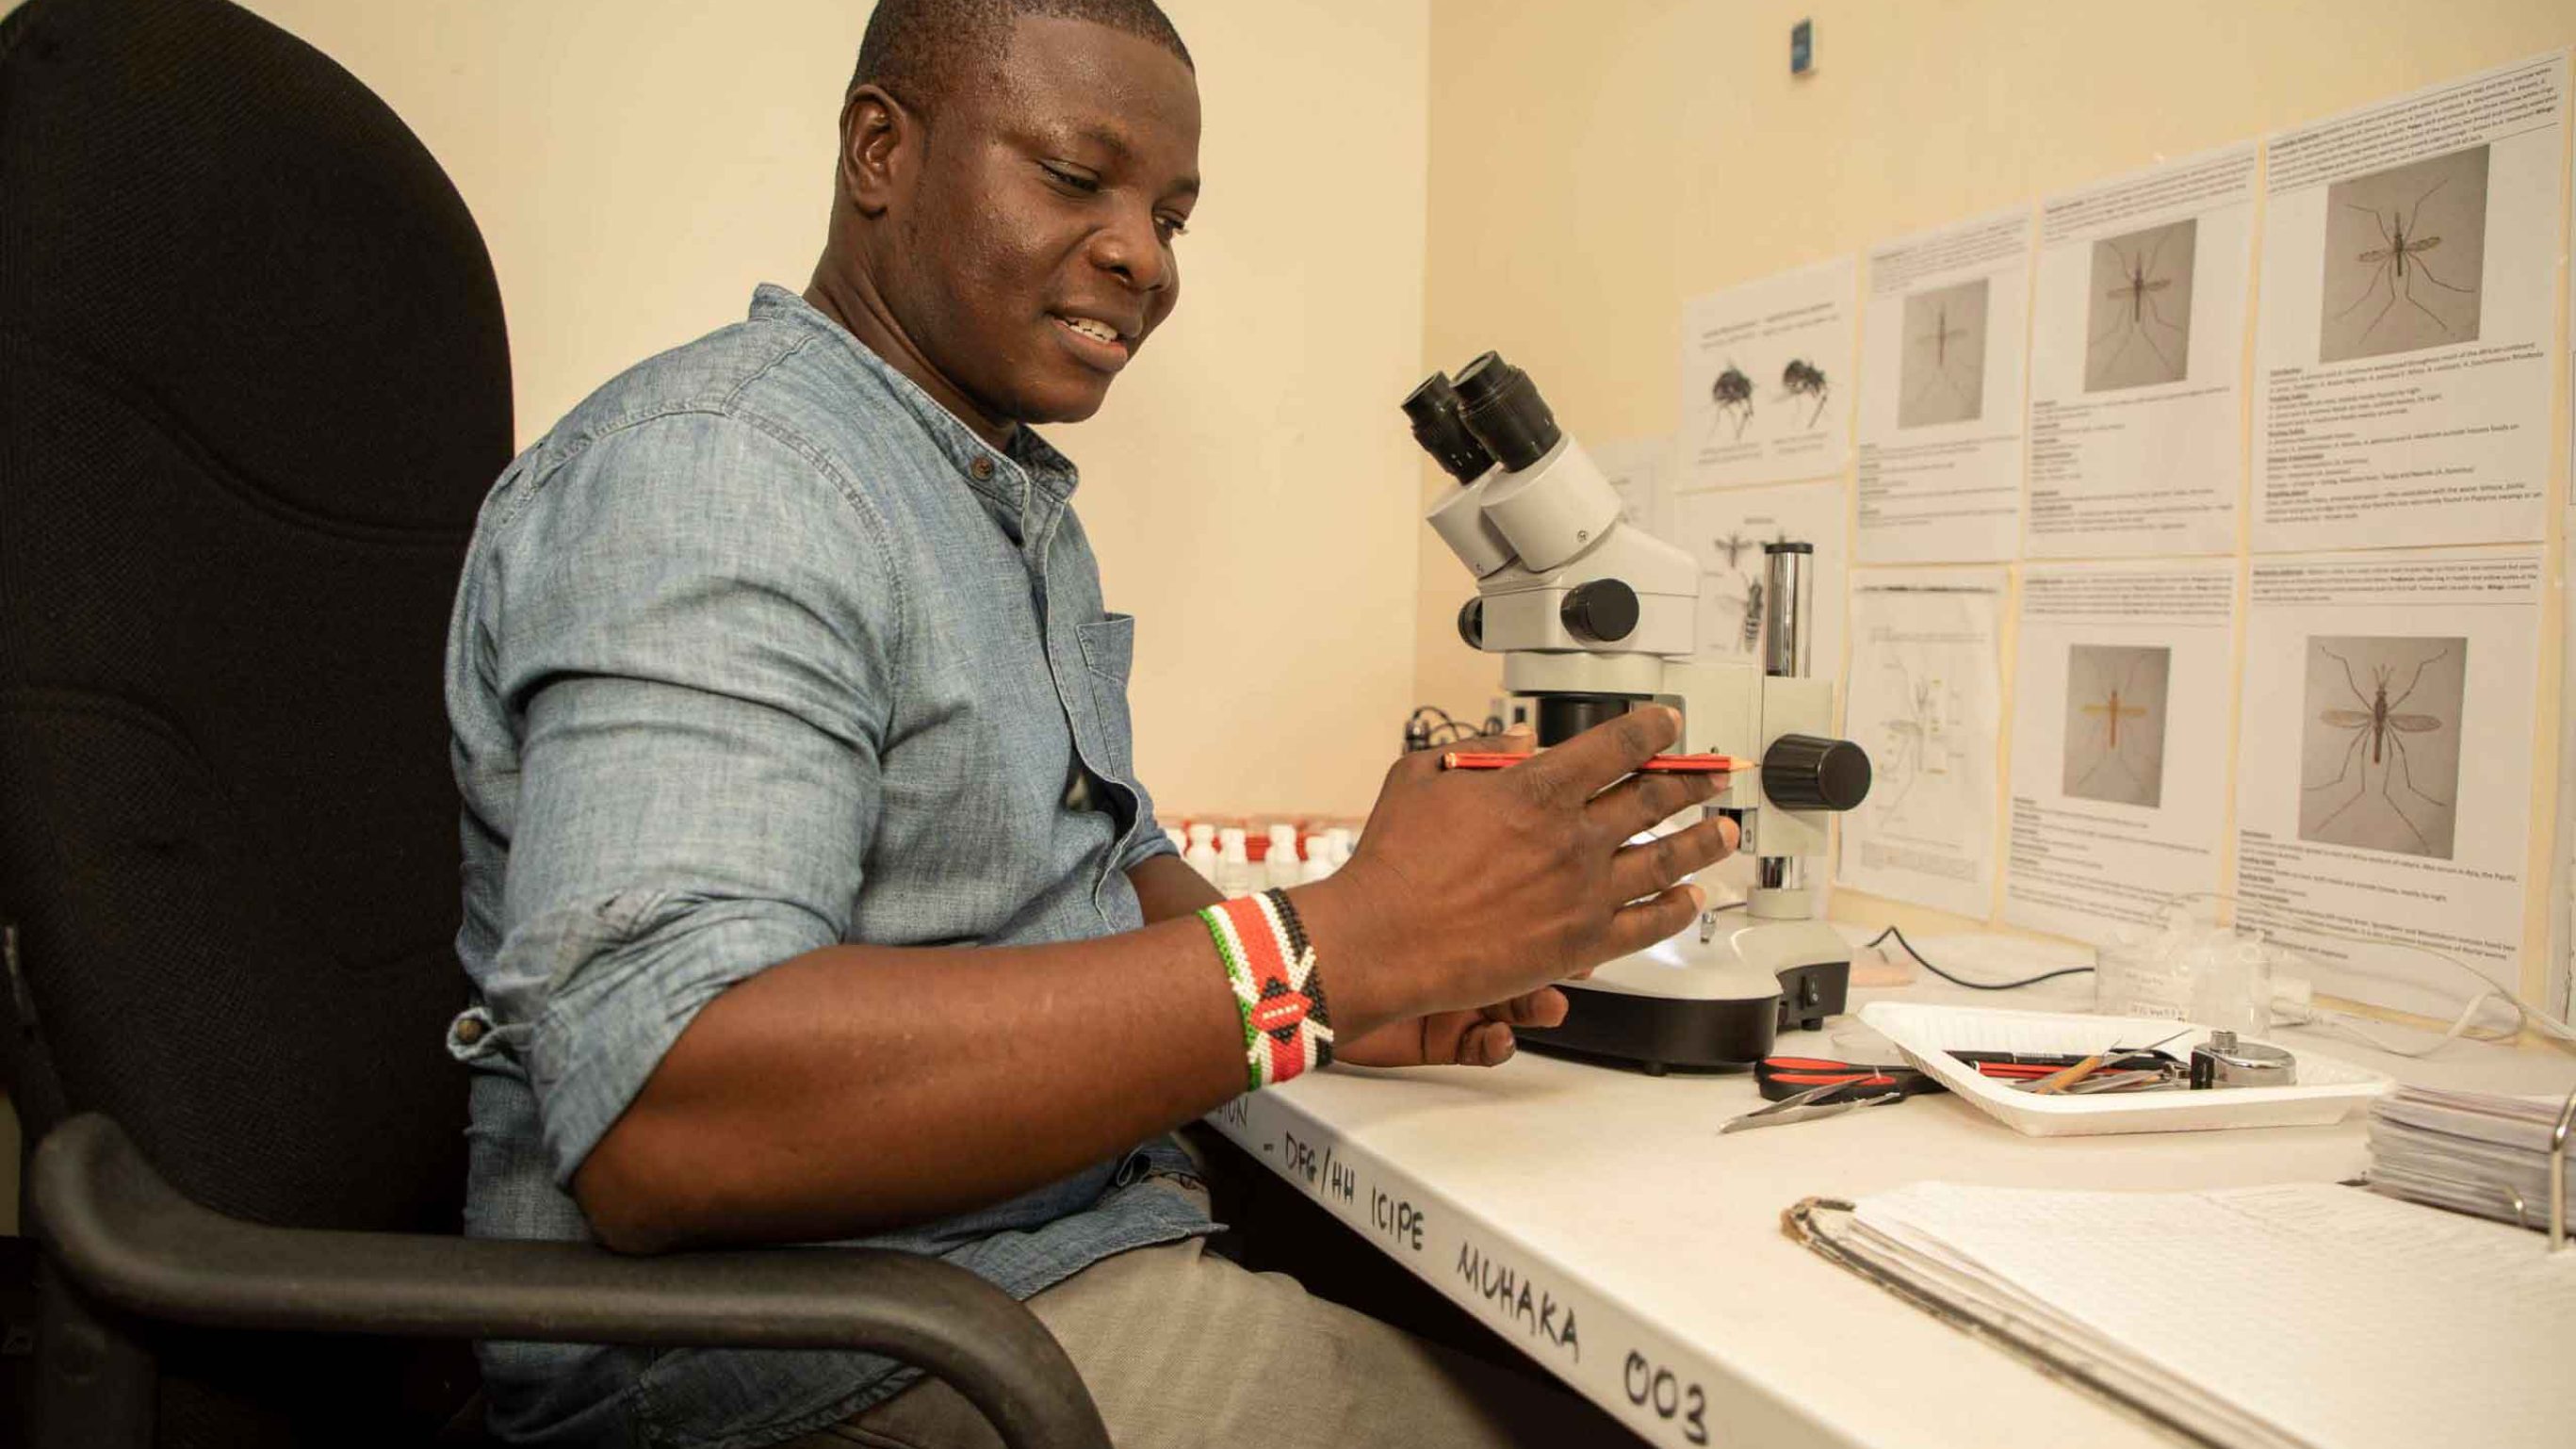 Icipe-Insektenforscher Paul Ouma untersucht im Labor die gesammelten Insekten und zählt die Krankheitsüberträger.